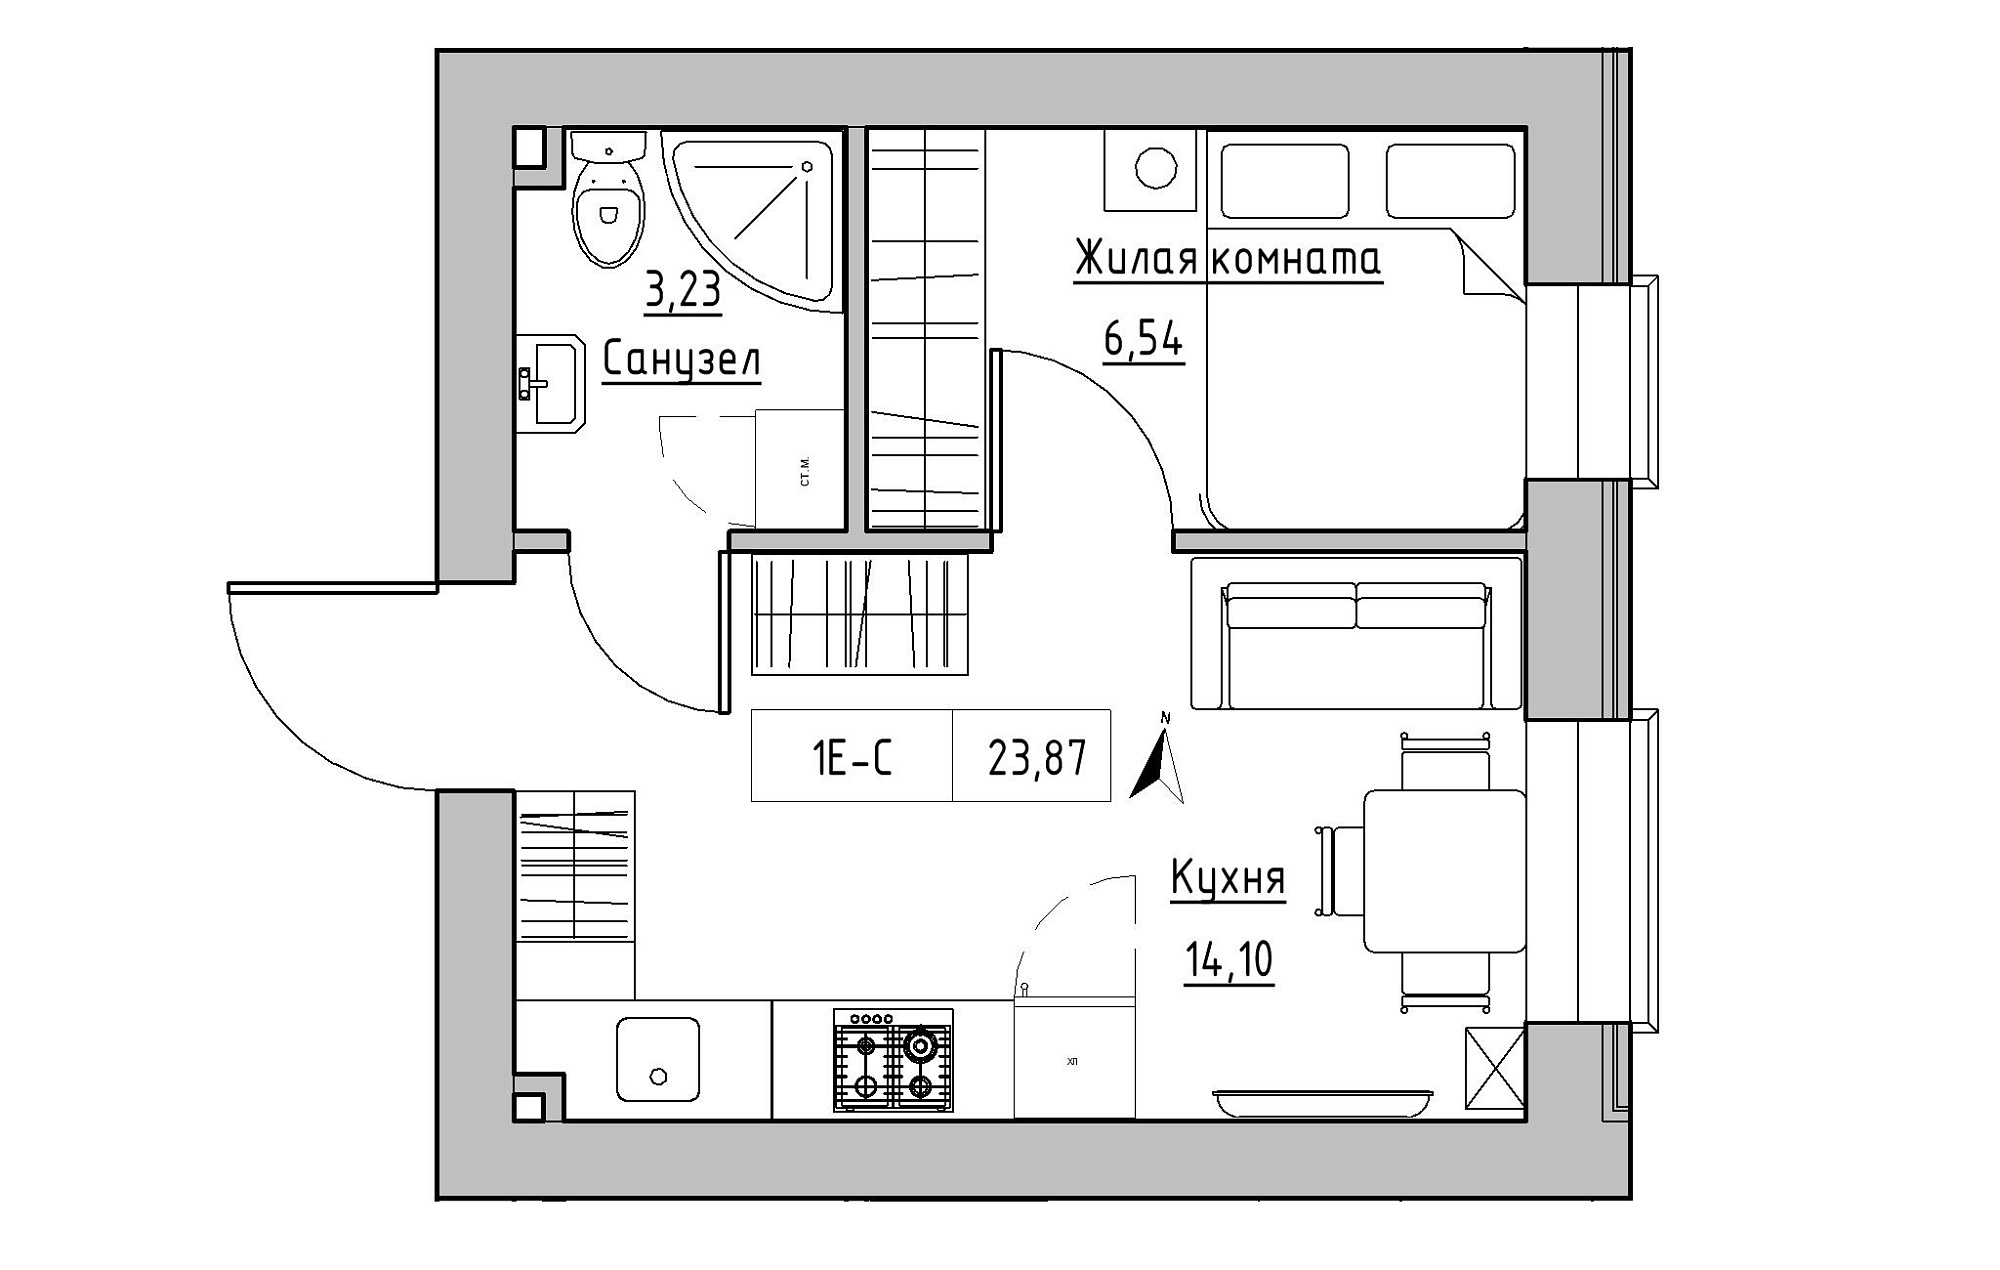 Планировка 1-к квартира площей 23.87м2, KS-019-04/0004.